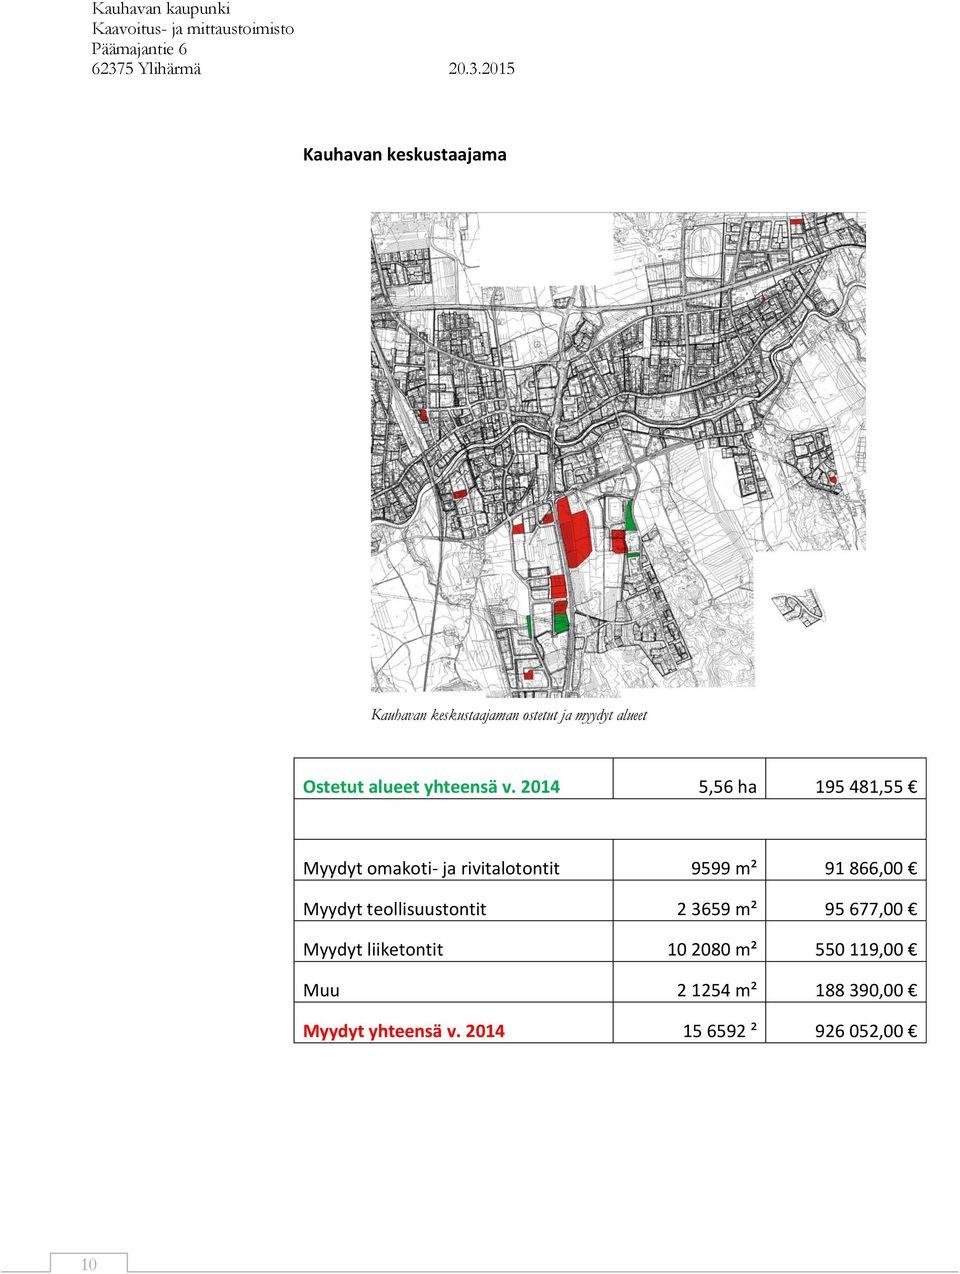 2014 5,56 ha 195 481,55 Myydyt omakoti- ja rivitalotontit 9599 m² 91 866,00 Myydyt